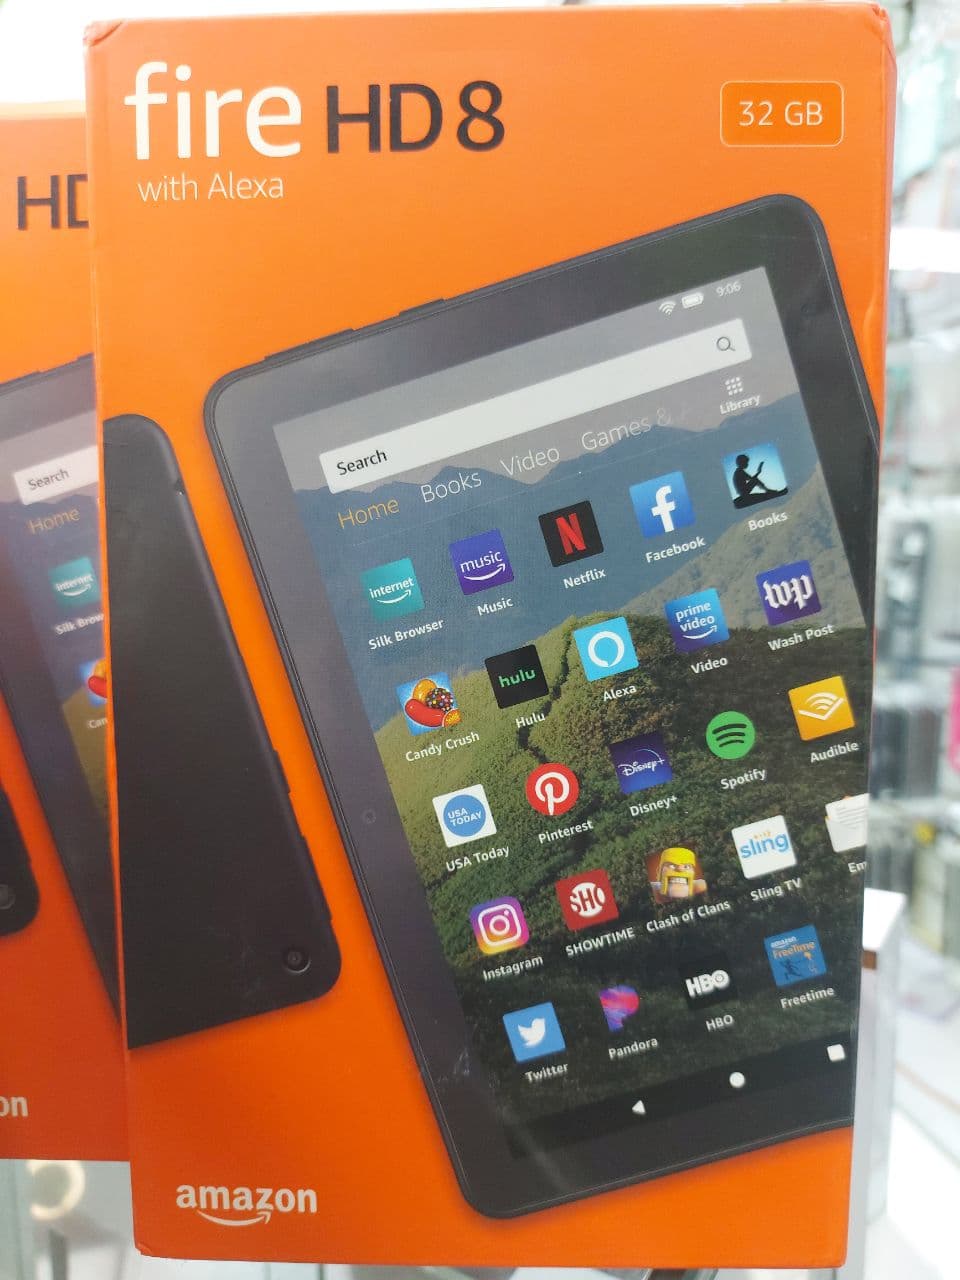 celulares y tabletas - fire HD 8 (2020)
32 GB